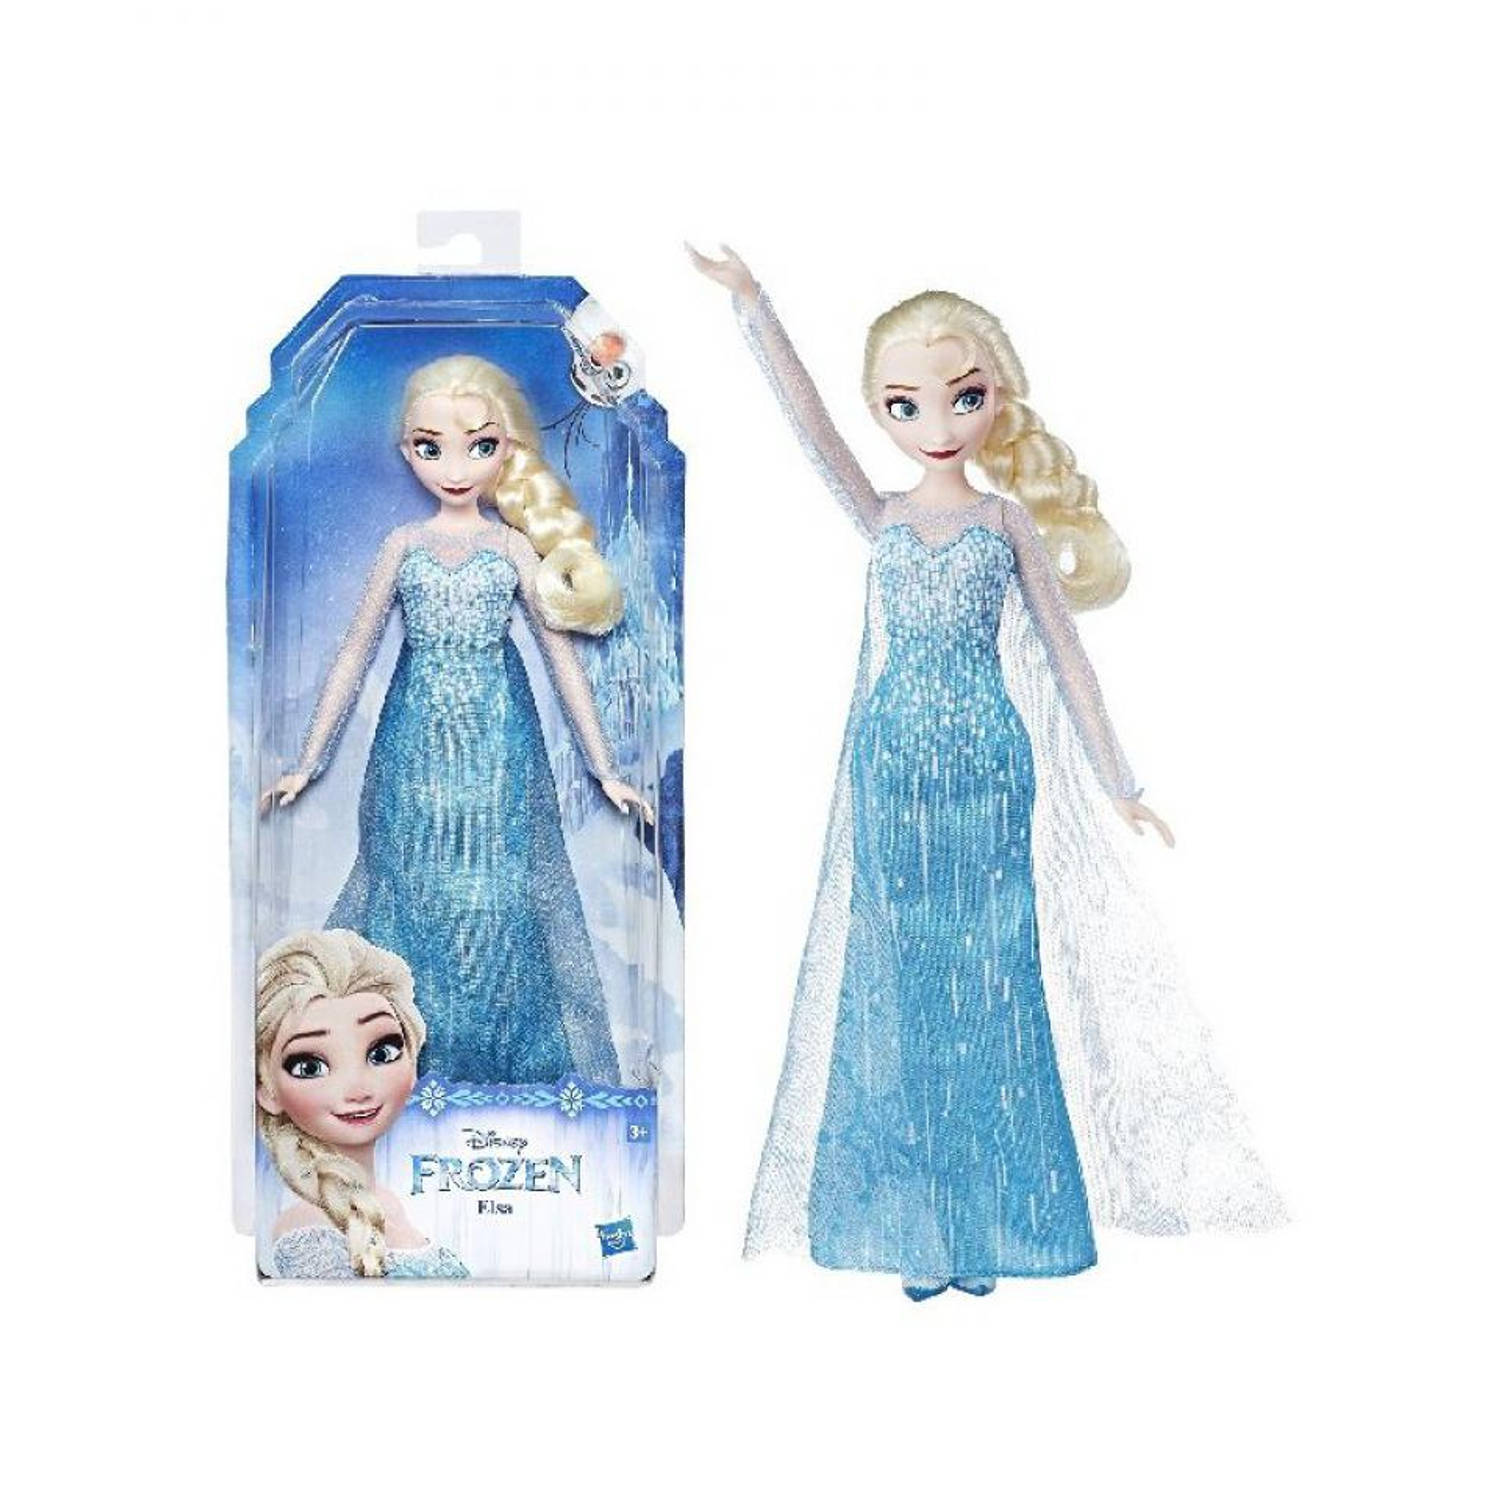 Goot liter Normalisatie Disney Frozen pop Elsa | Blokker